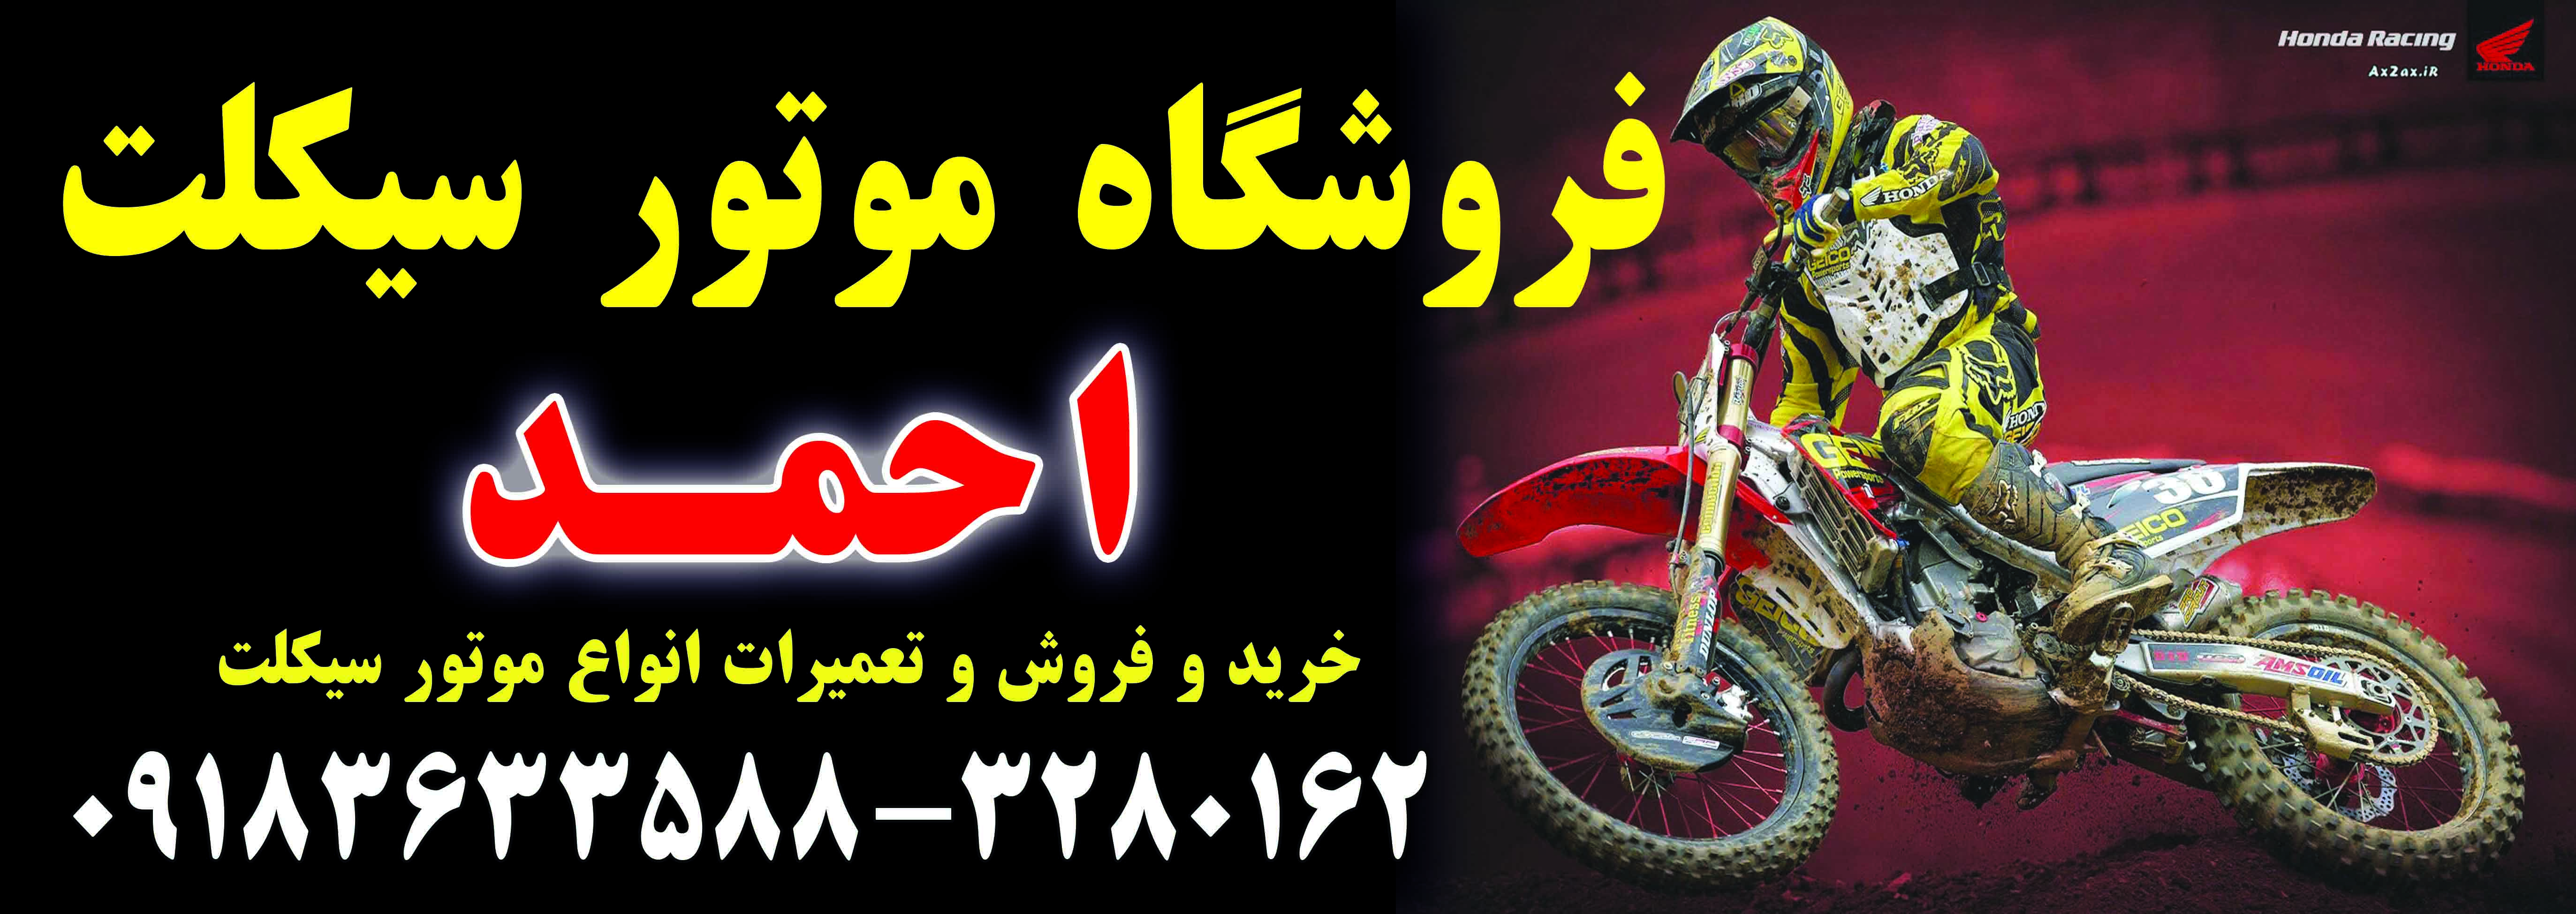 نمایشگاه وفروشگاه بزرگ موتورسیکلت احمد در اراک 09183633588